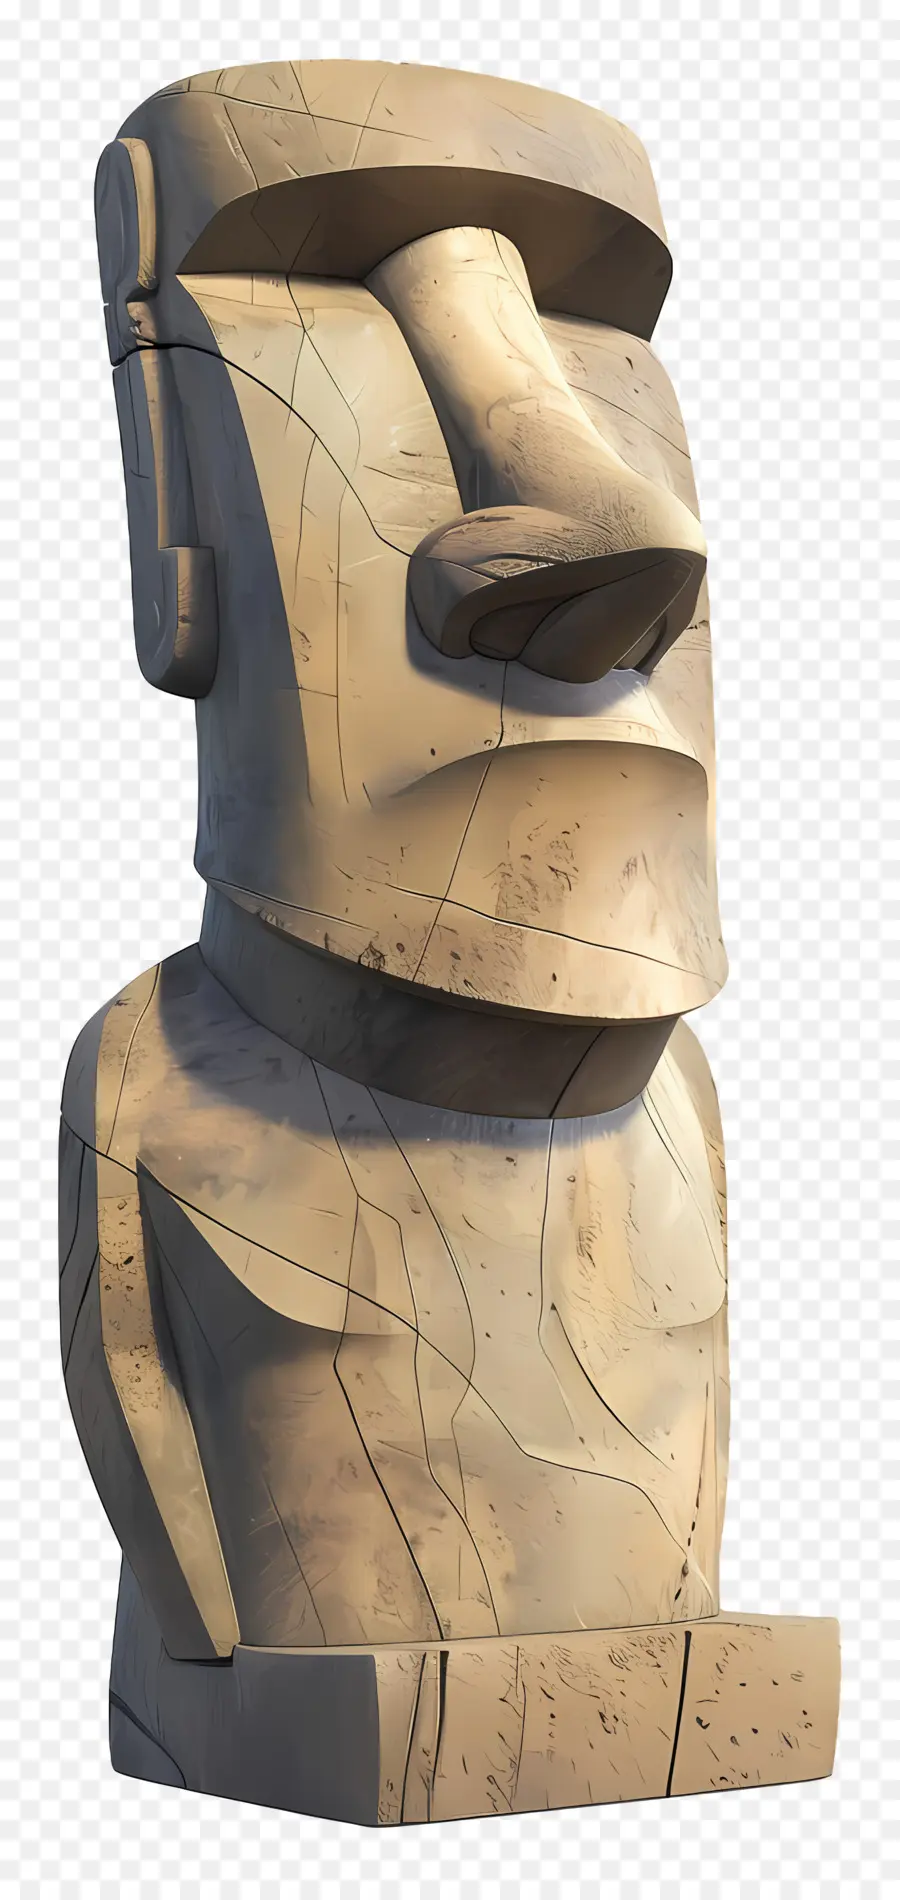 Moai Maori văn hóa chạm khắc bức tượng nghệ thuật nghệ thuật bản địa nghệ thuật - Tượng khuôn mặt Maori với quai hàm bị đục